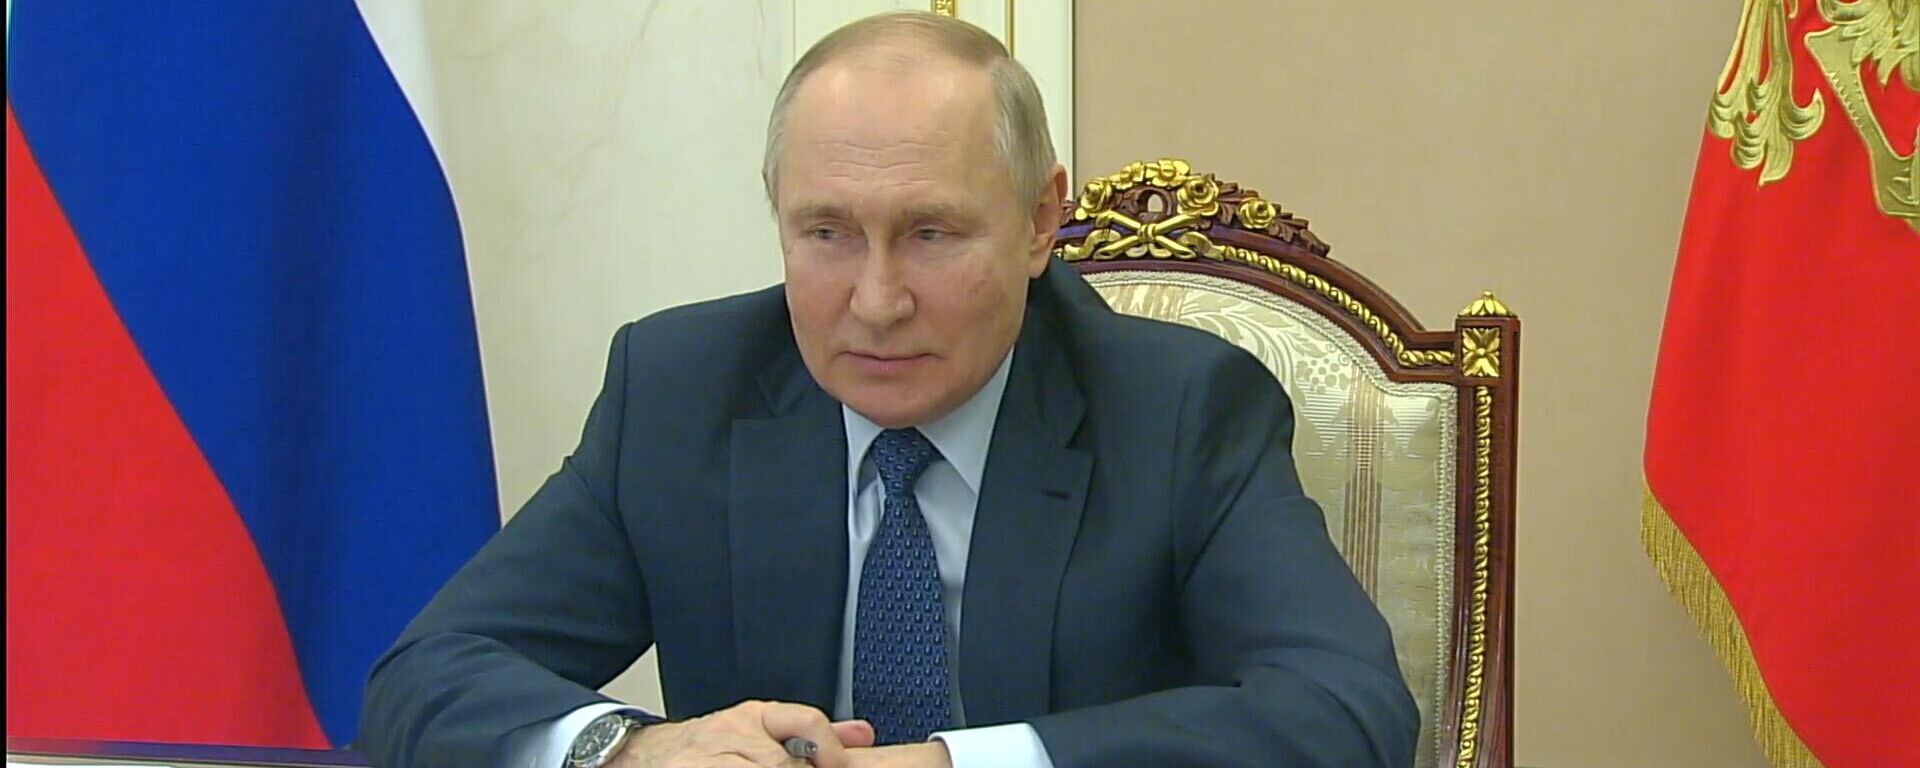 Ông Putin: Nguy cơ chiến tranh hạt nhân ngày càng lớn nhưng LB Nga sẽ không sử dụng vũ khí hạt nhân trước - Sputnik Việt Nam, 1920, 08.12.2022